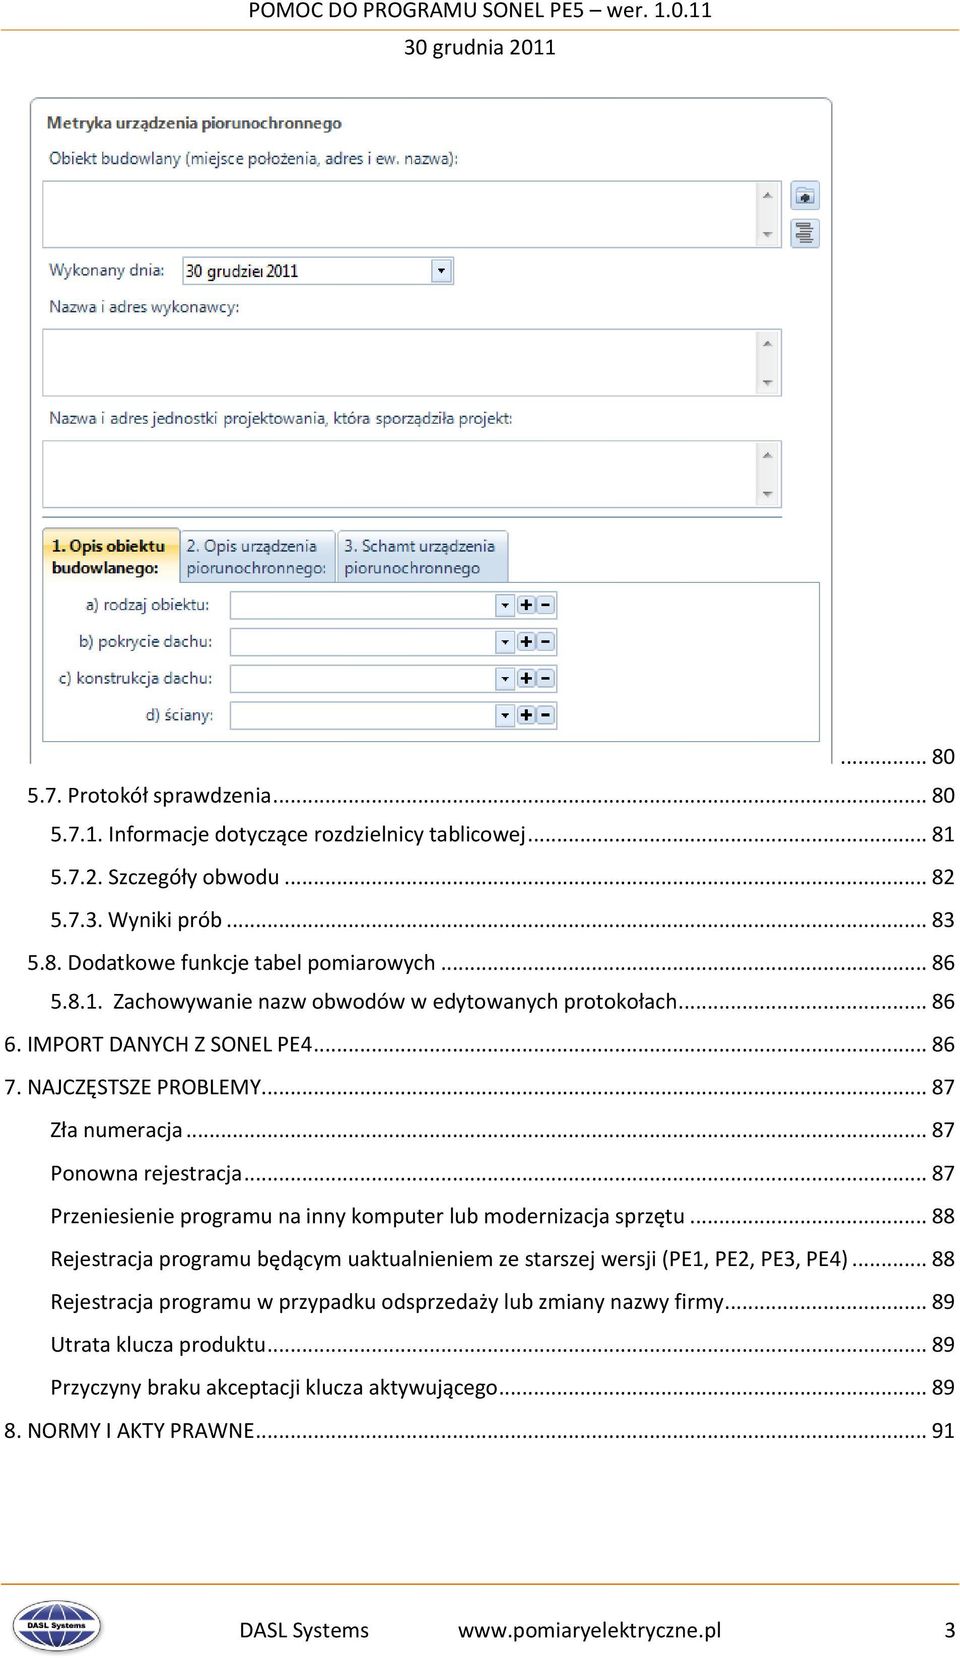 .. 87 Przeniesienie programu na inny komputer lub modernizacja sprzętu... 88 Rejestracja programu będącym uaktualnieniem ze starszej wersji (PE1, PE2, PE3, PE4).